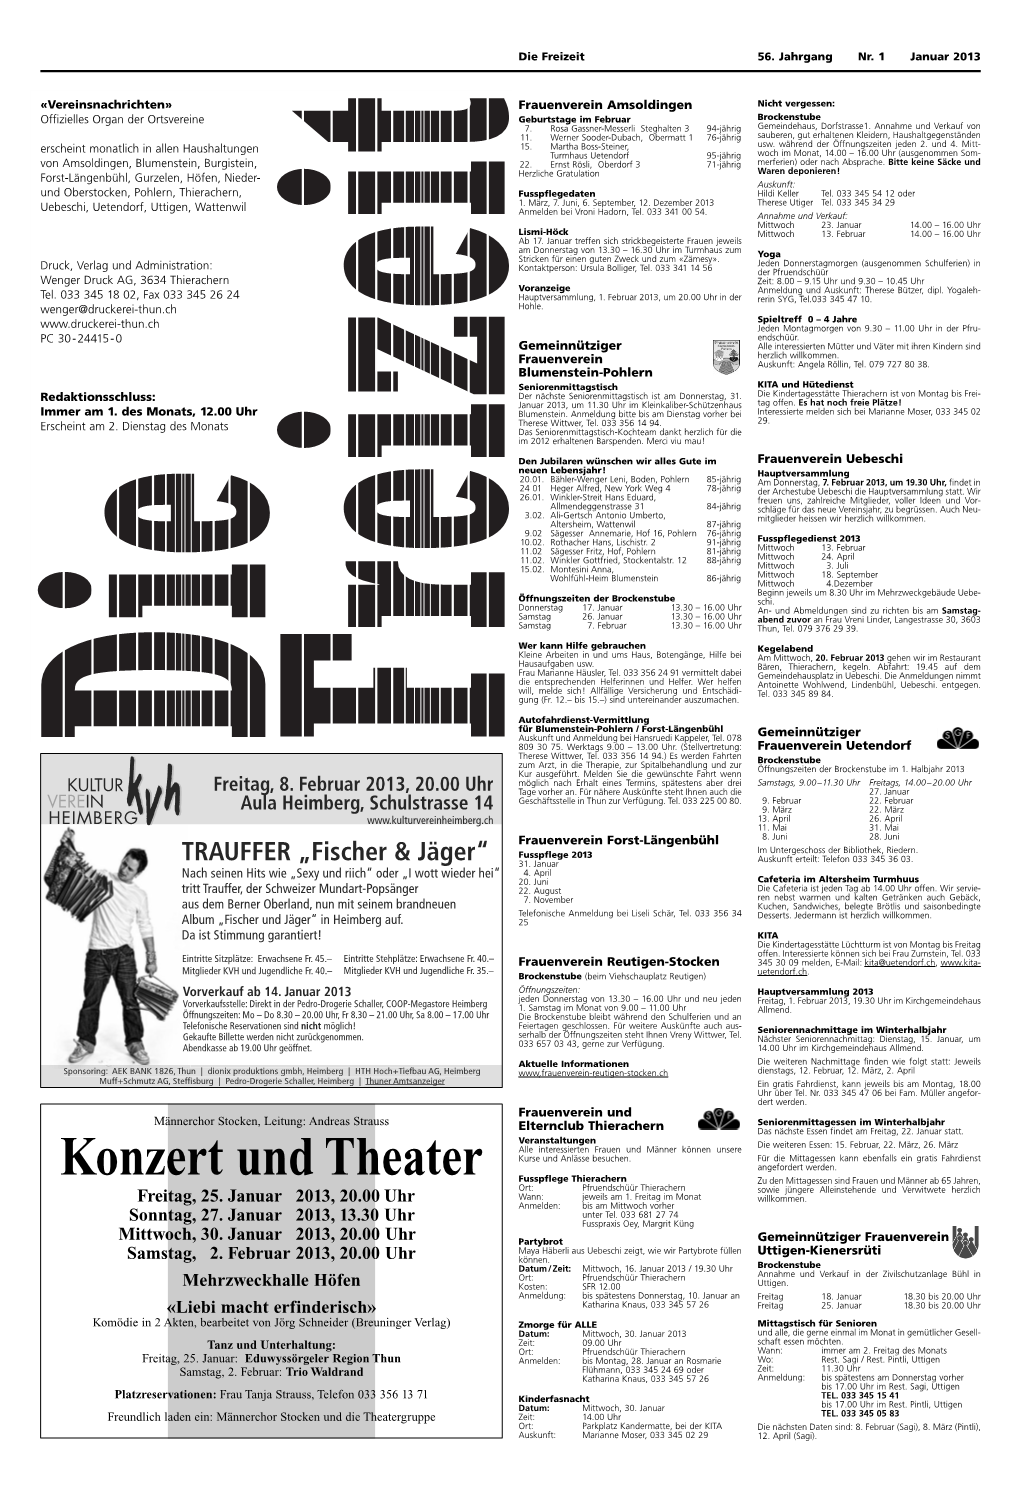 Konzert Und Theater